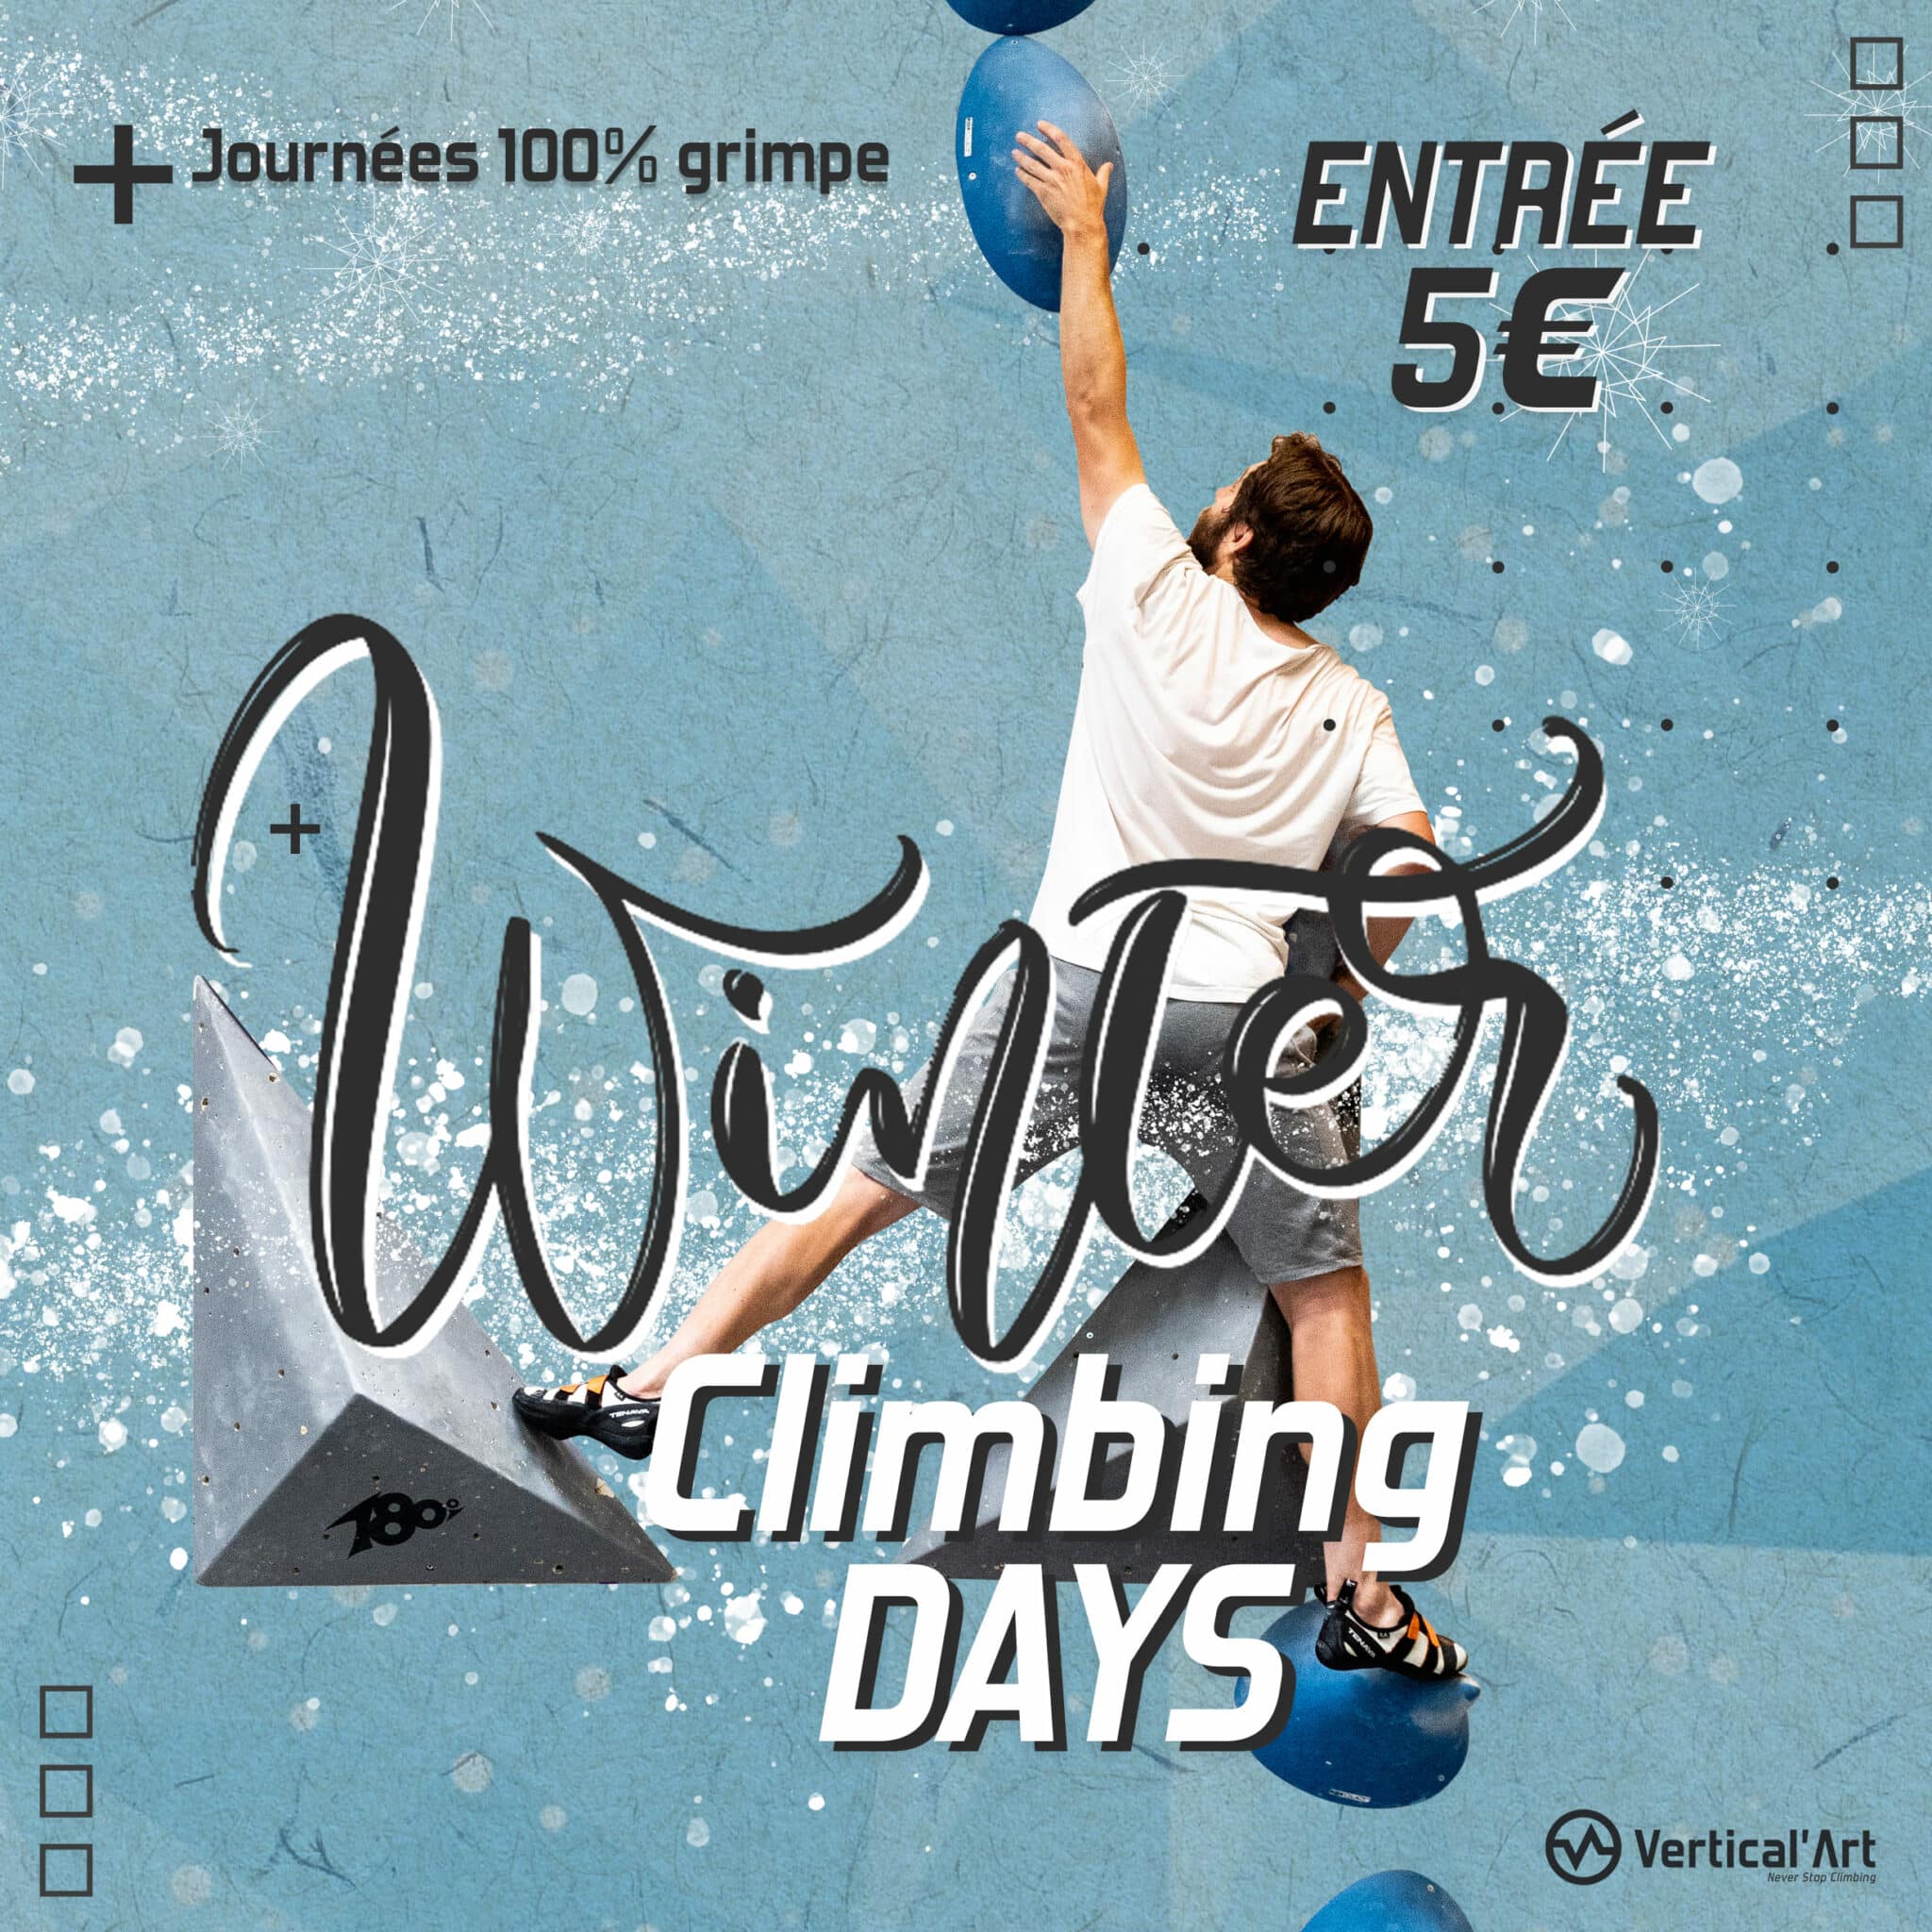 Winter Climbing Days à Vertical’Art Grenoble, escalade à 5€ pour tous pendant les vacances d'hiver